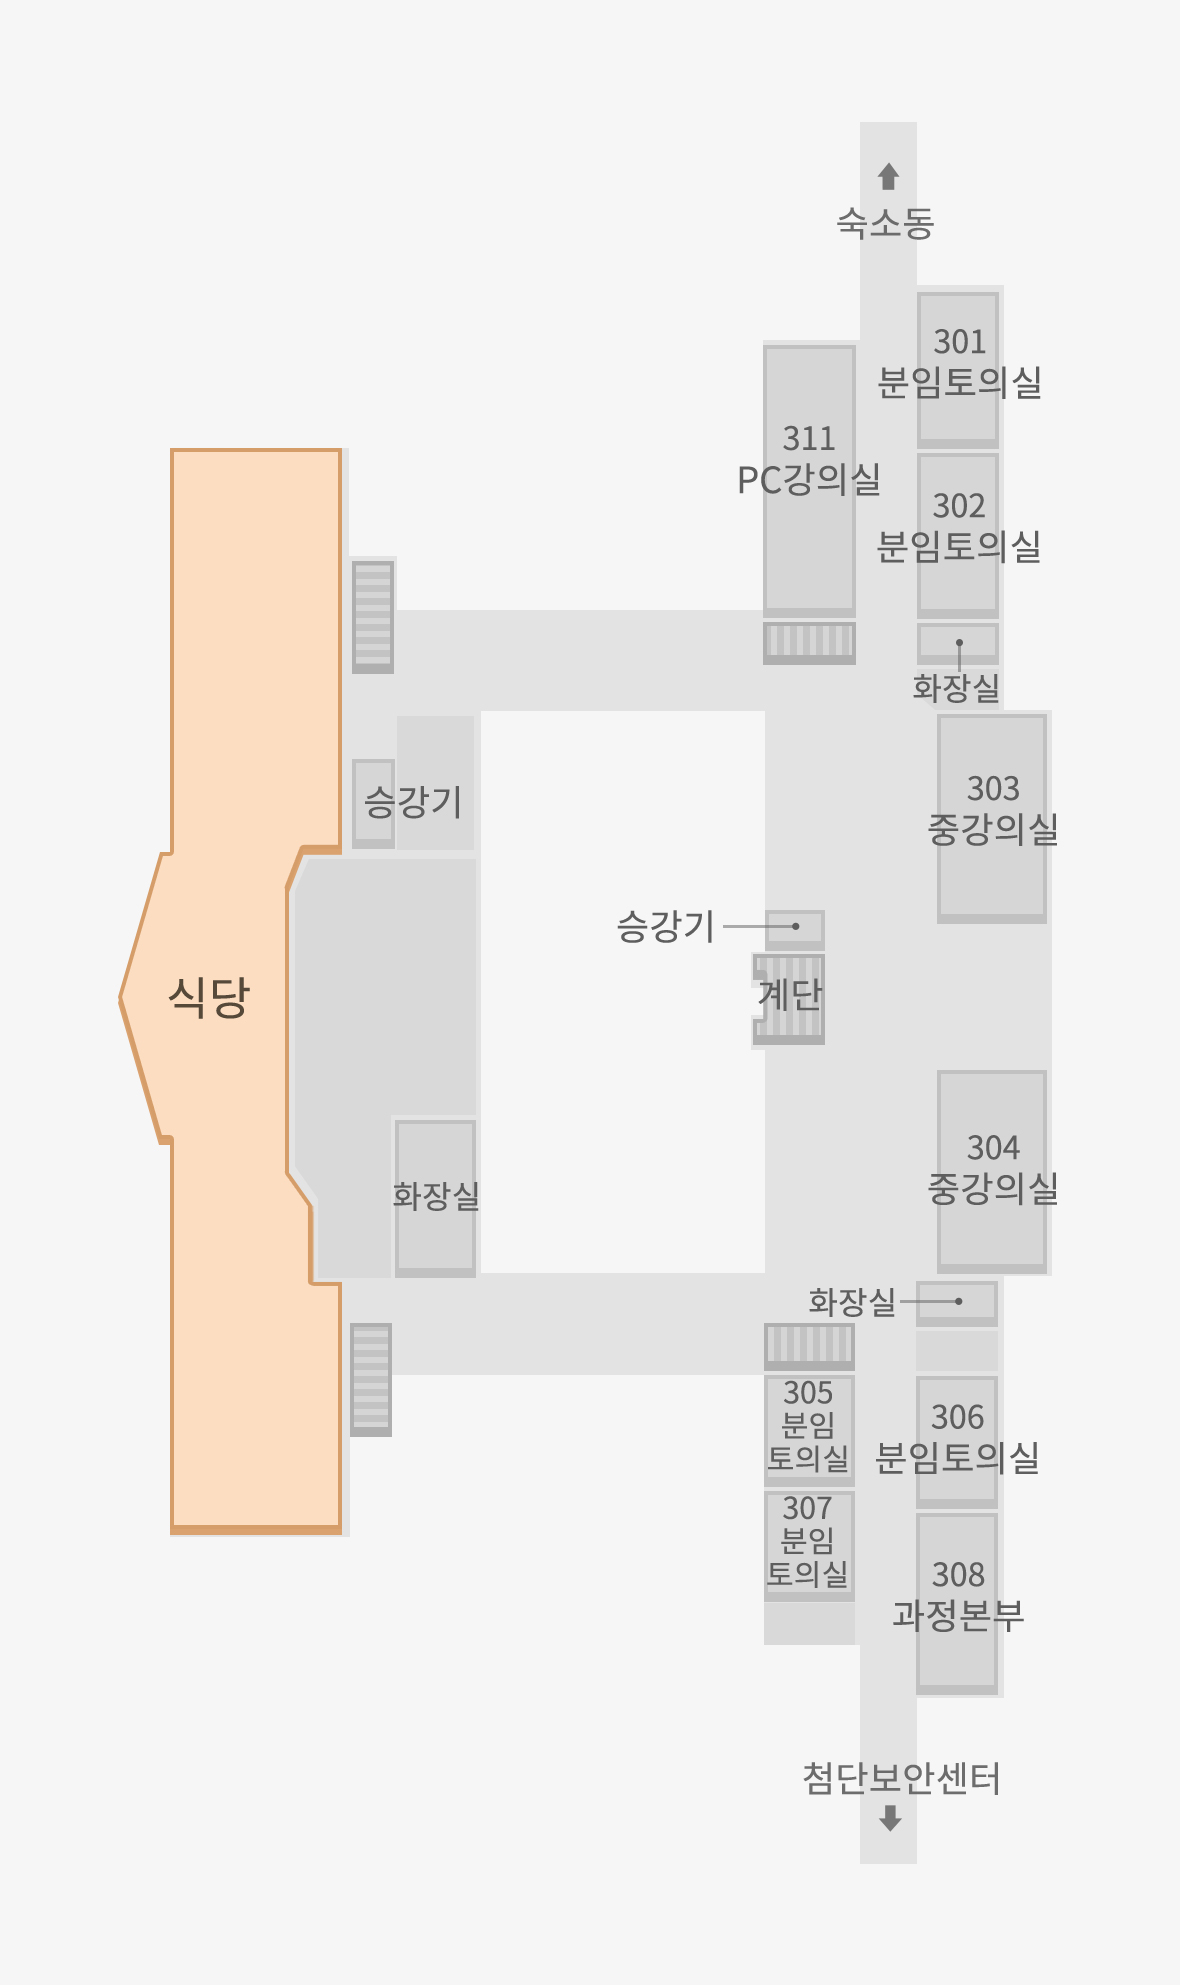 식당은 본관동 3층에 위치해 있습니다. 본관동 3층 아래쪽에는 식당이 있으며 위쪽으로는 중강의실 3개, 분임토의실 5개, 과정본부가 있습니다. 그리고 3층에는 숙소동과 첨단보안센터로 연결되는 통로가 있습니다. 그리고 식당과 중강의실 앞에 승강기가 있고 중강의실 좌우측으로 남녀 화장실이 있습니다.